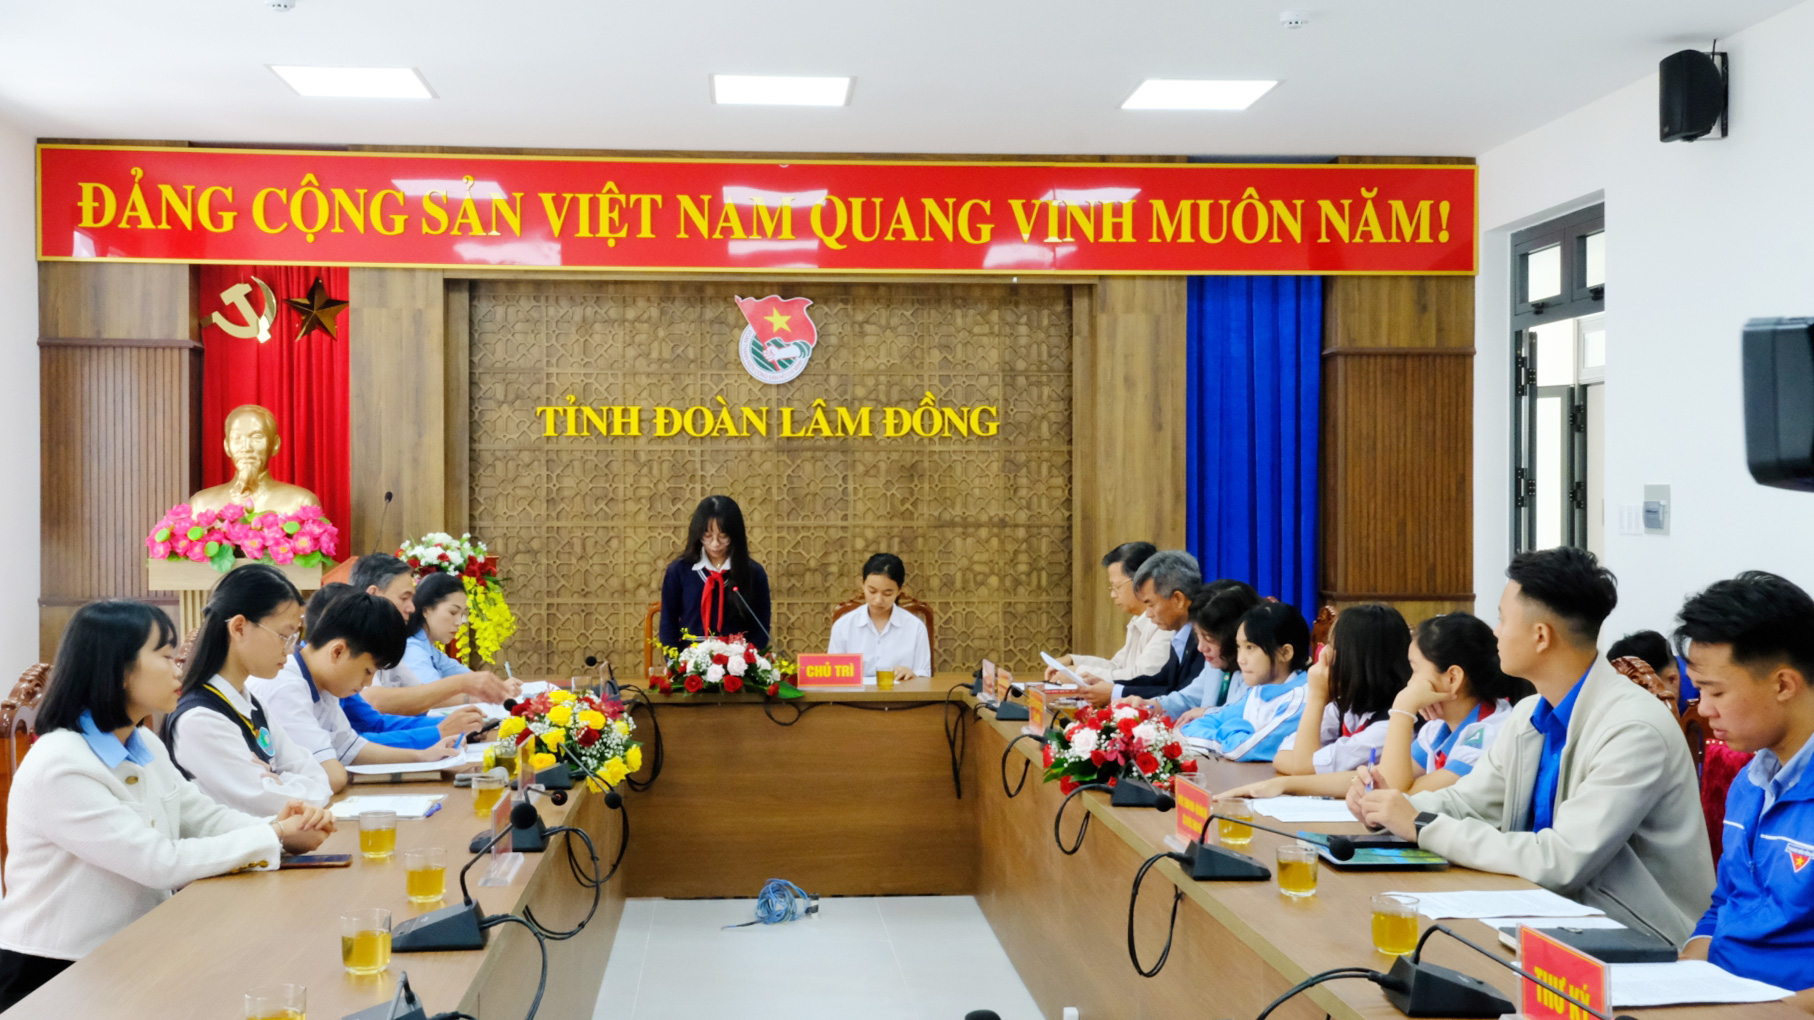 Các đại biểu tham dự kỳ họp Hội đồng trẻ em tại điểm cầu Tỉnh Đoàn Lâm Đồng